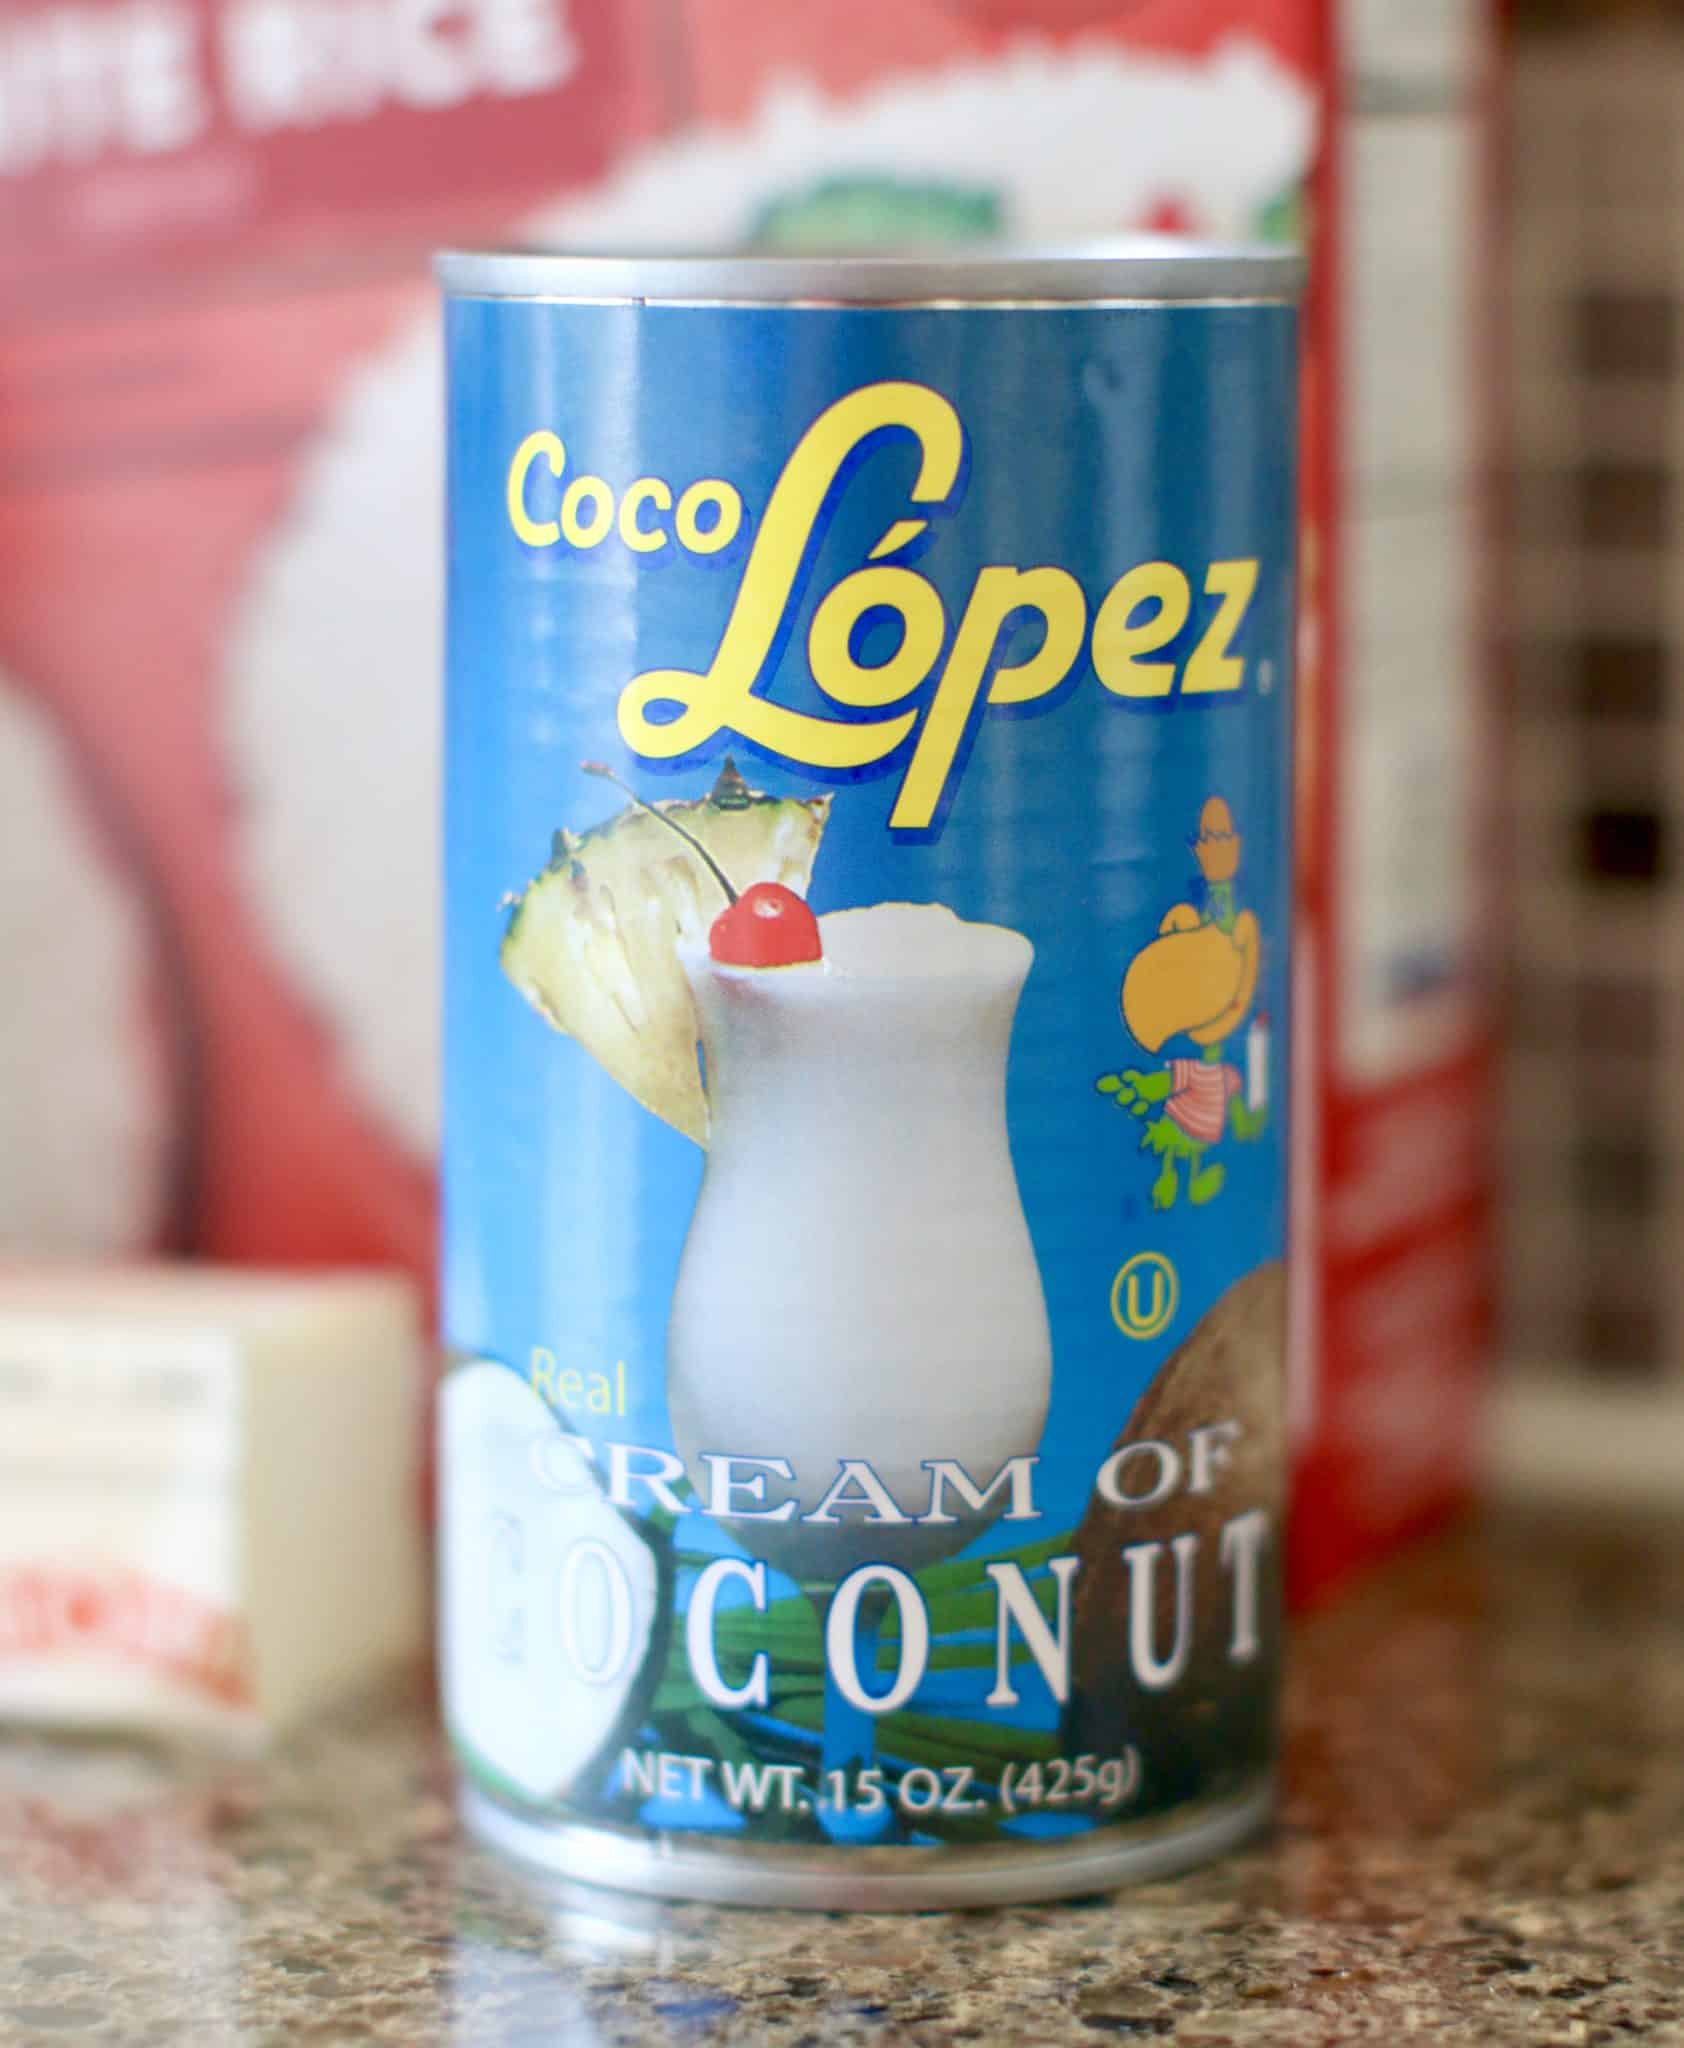 Coco Lopez Cream of Coconut.